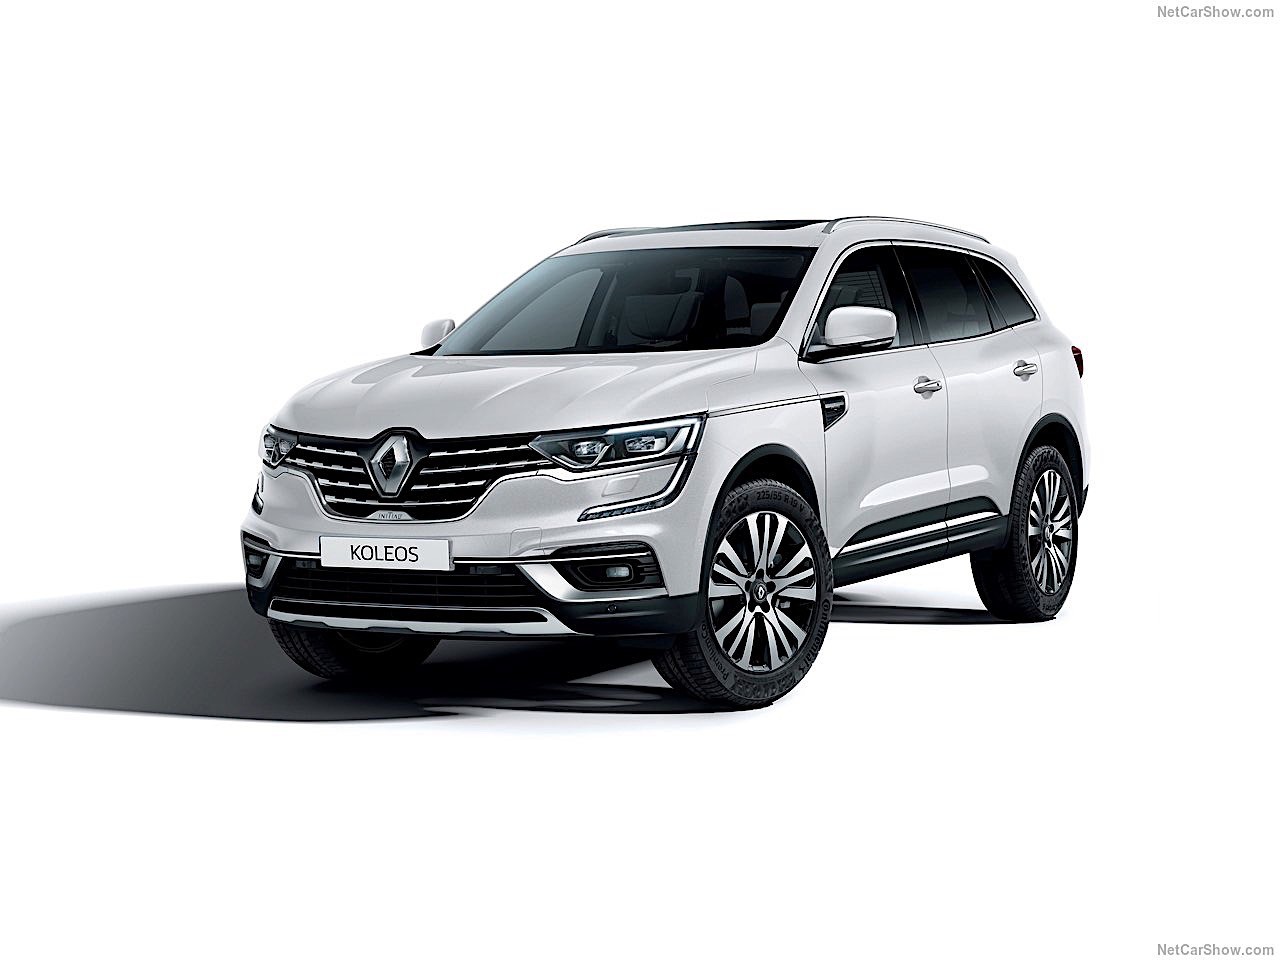 2020 Renault Koleos facelift revealed 